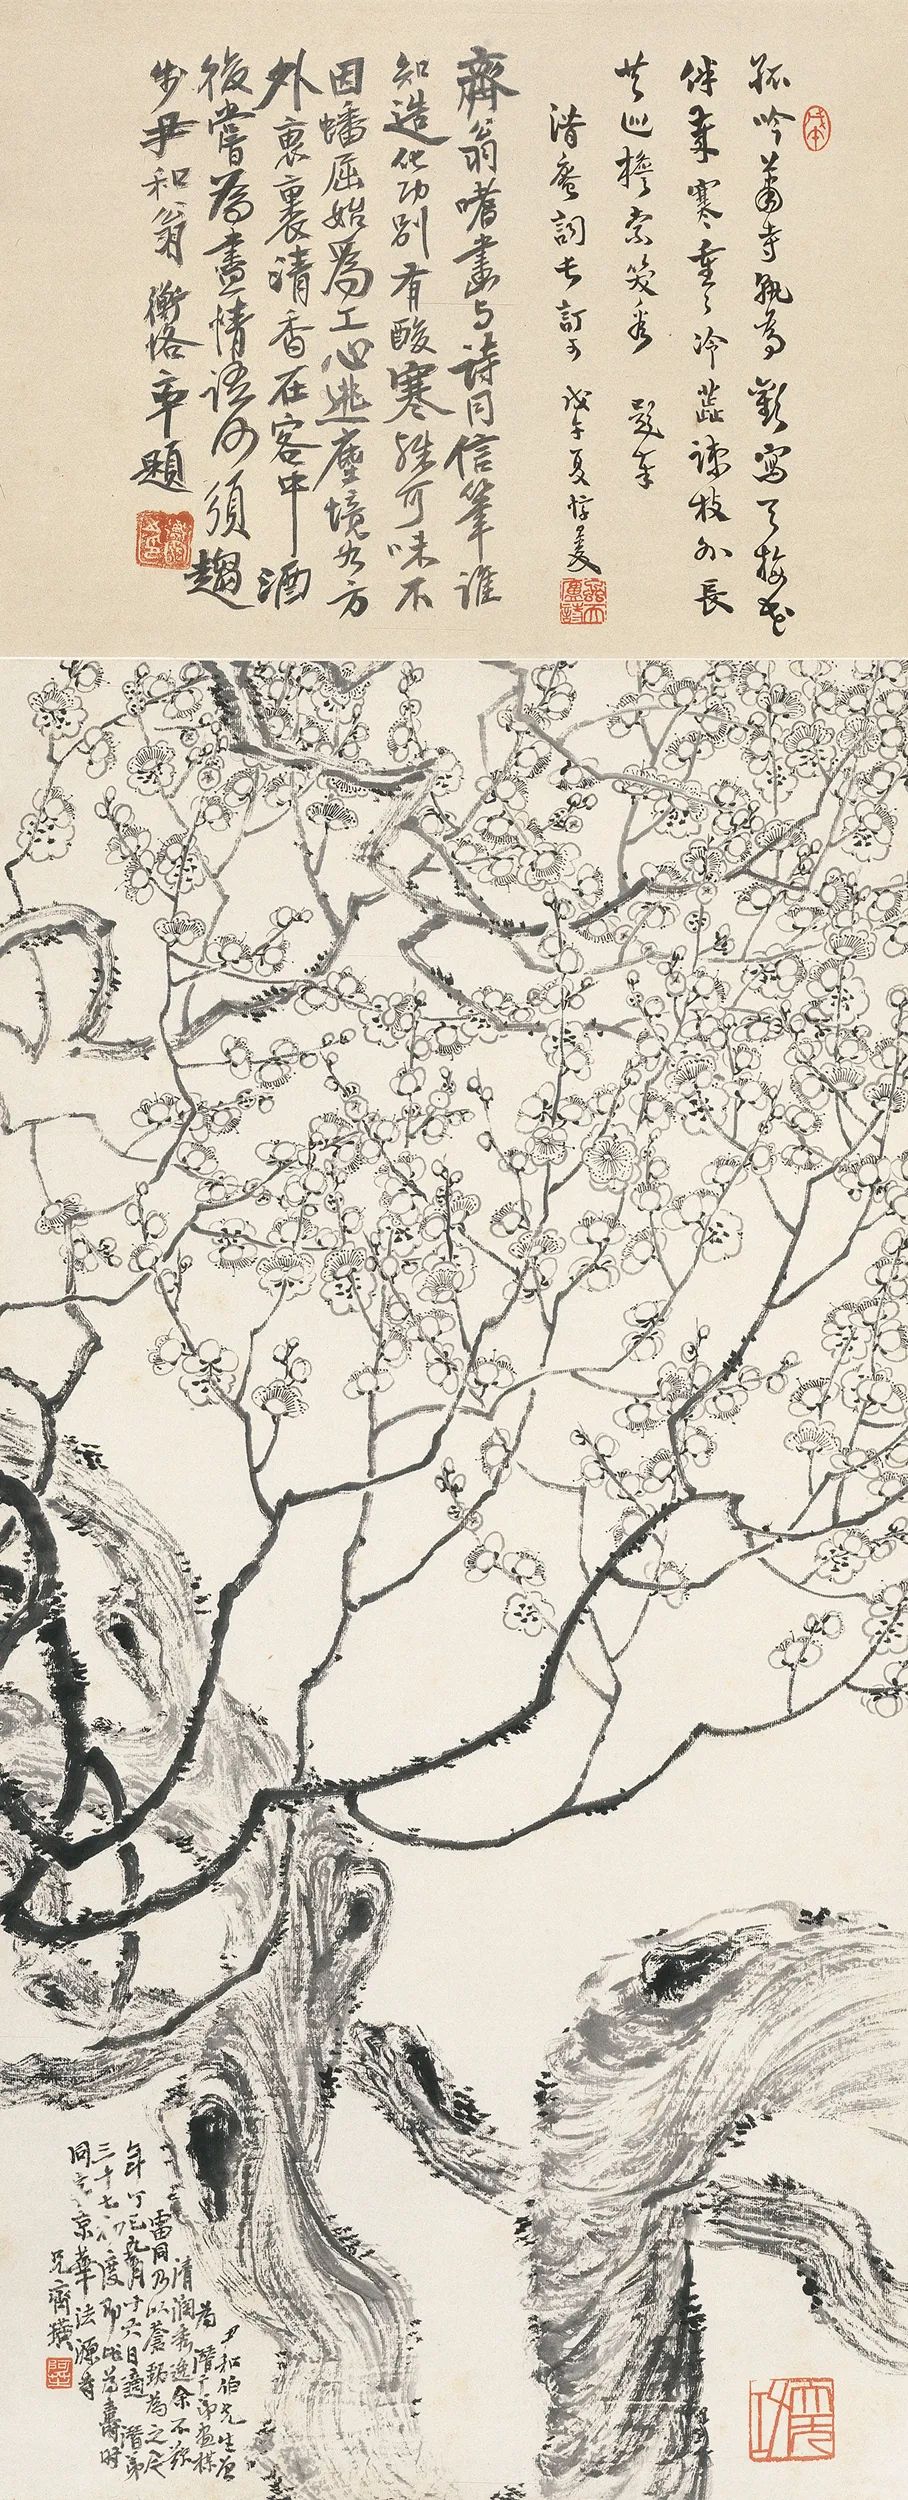 墨梅 齐白石 1917年 116×42.5cm 轴 纸本墨笔 北京画院藏